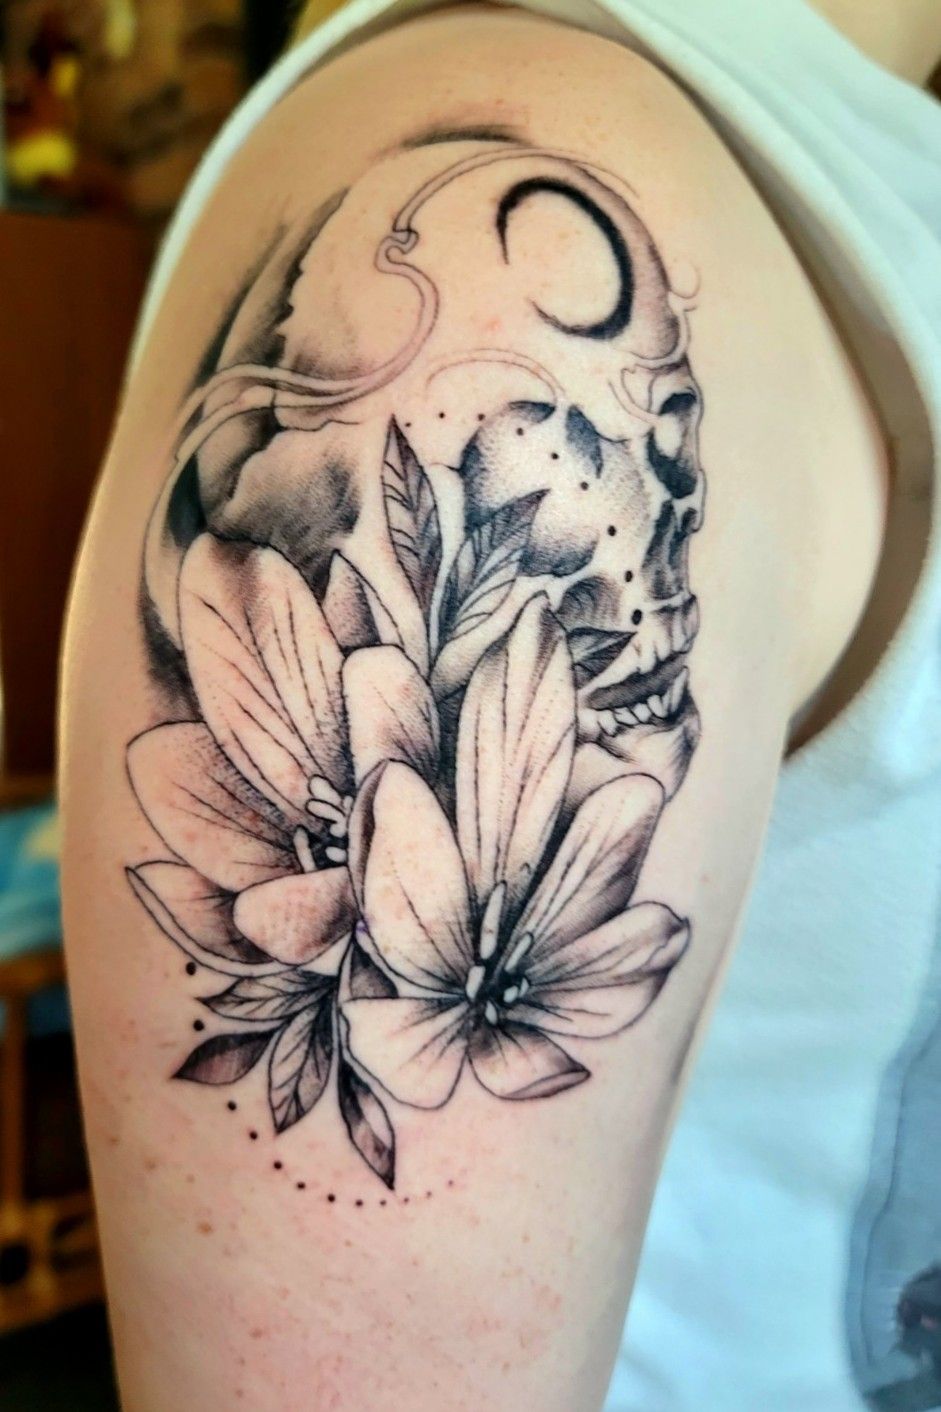 Floral on back/shoulder | Popular tattoos, Shoulder tattoo, Body art tattoos